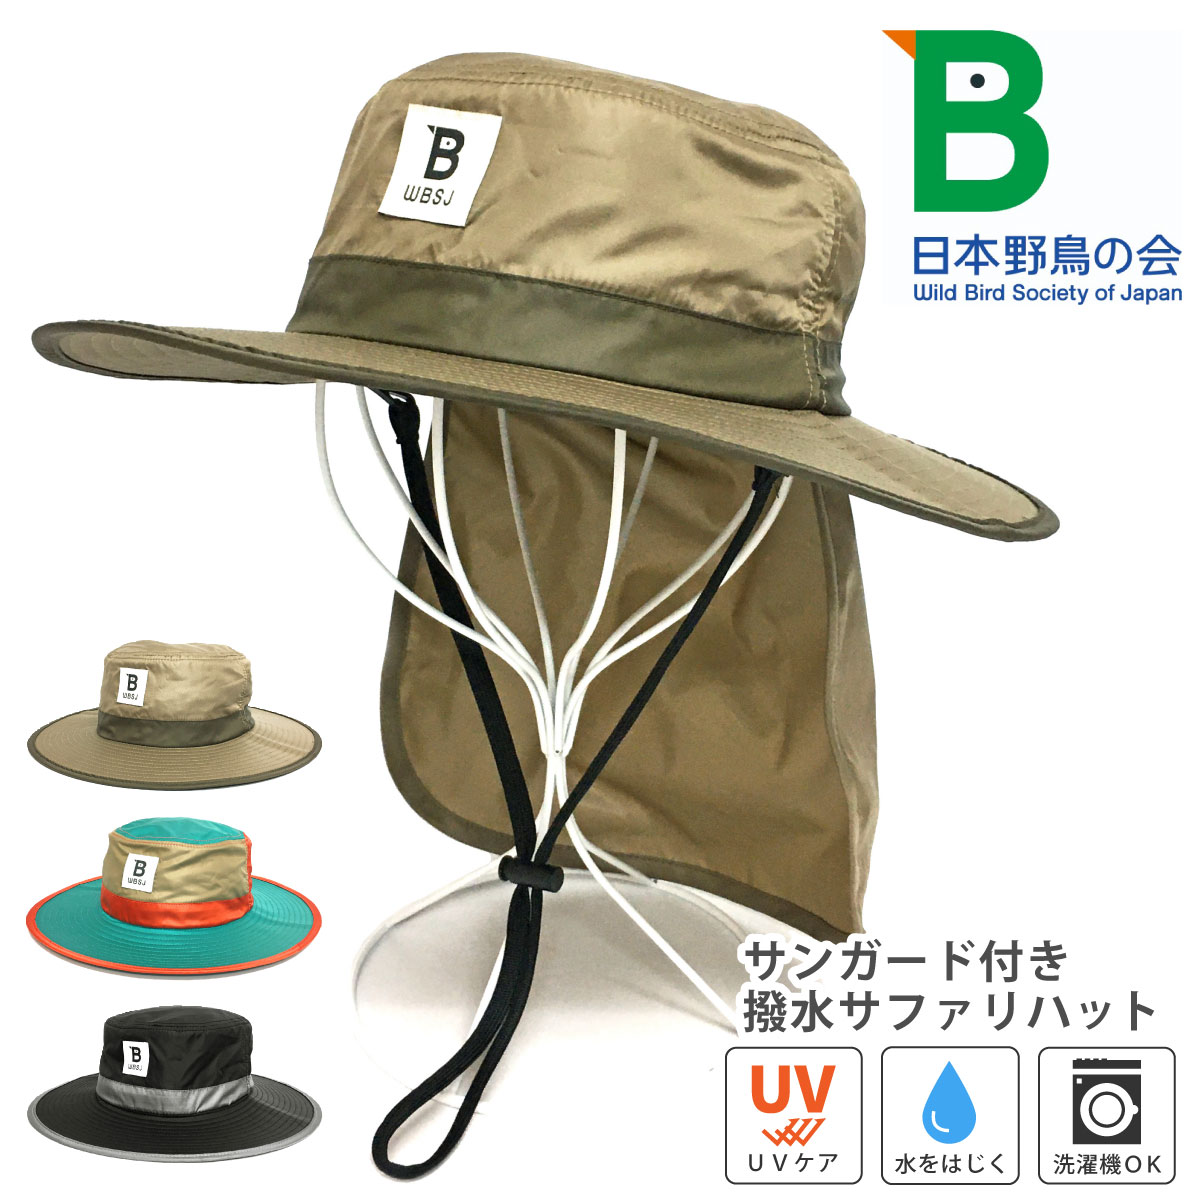 帽子 日本野鳥の会 撥水サファリハット UV90%カット つば長 hat-1451 WBSJ 正規品 メンズ レディース 春夏 アウトドア  :hat-1451:ハッピーハット 通販 